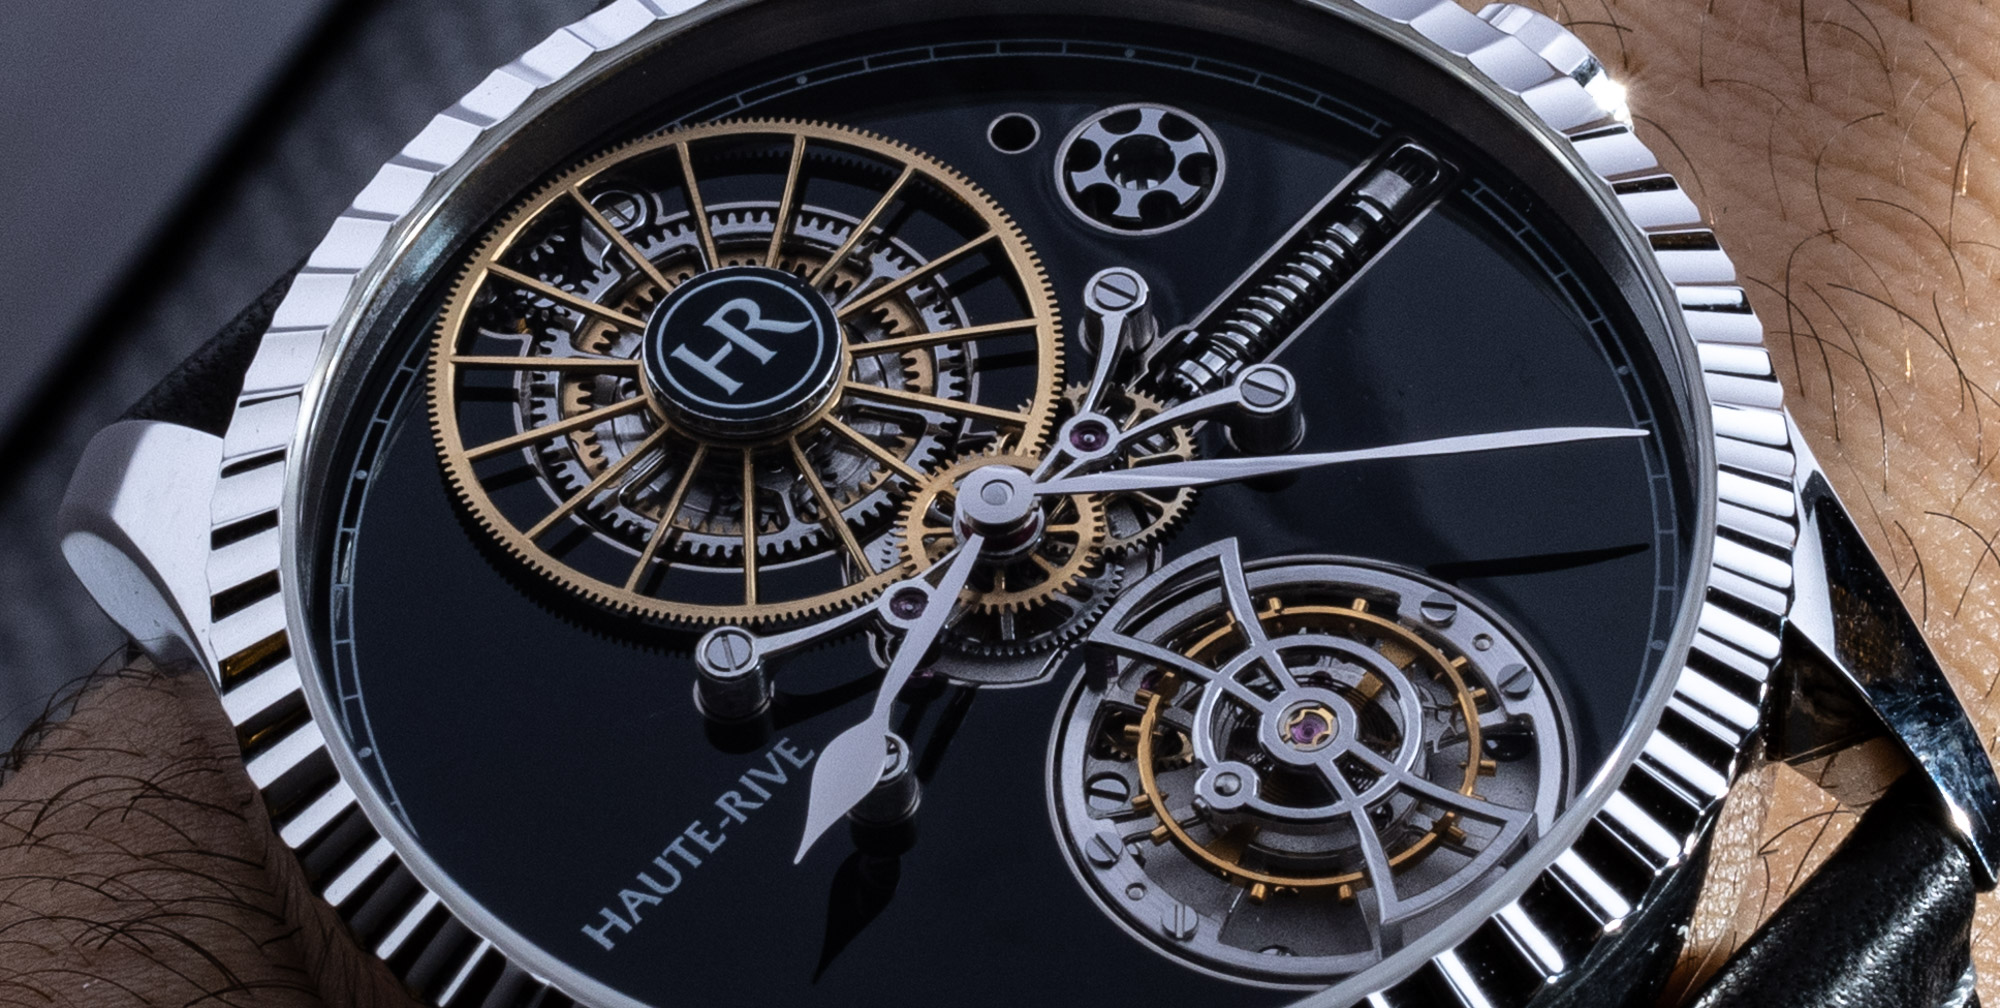 Уникальные часы Haute-Rive Honoris I с запасом хода 1 000 часов